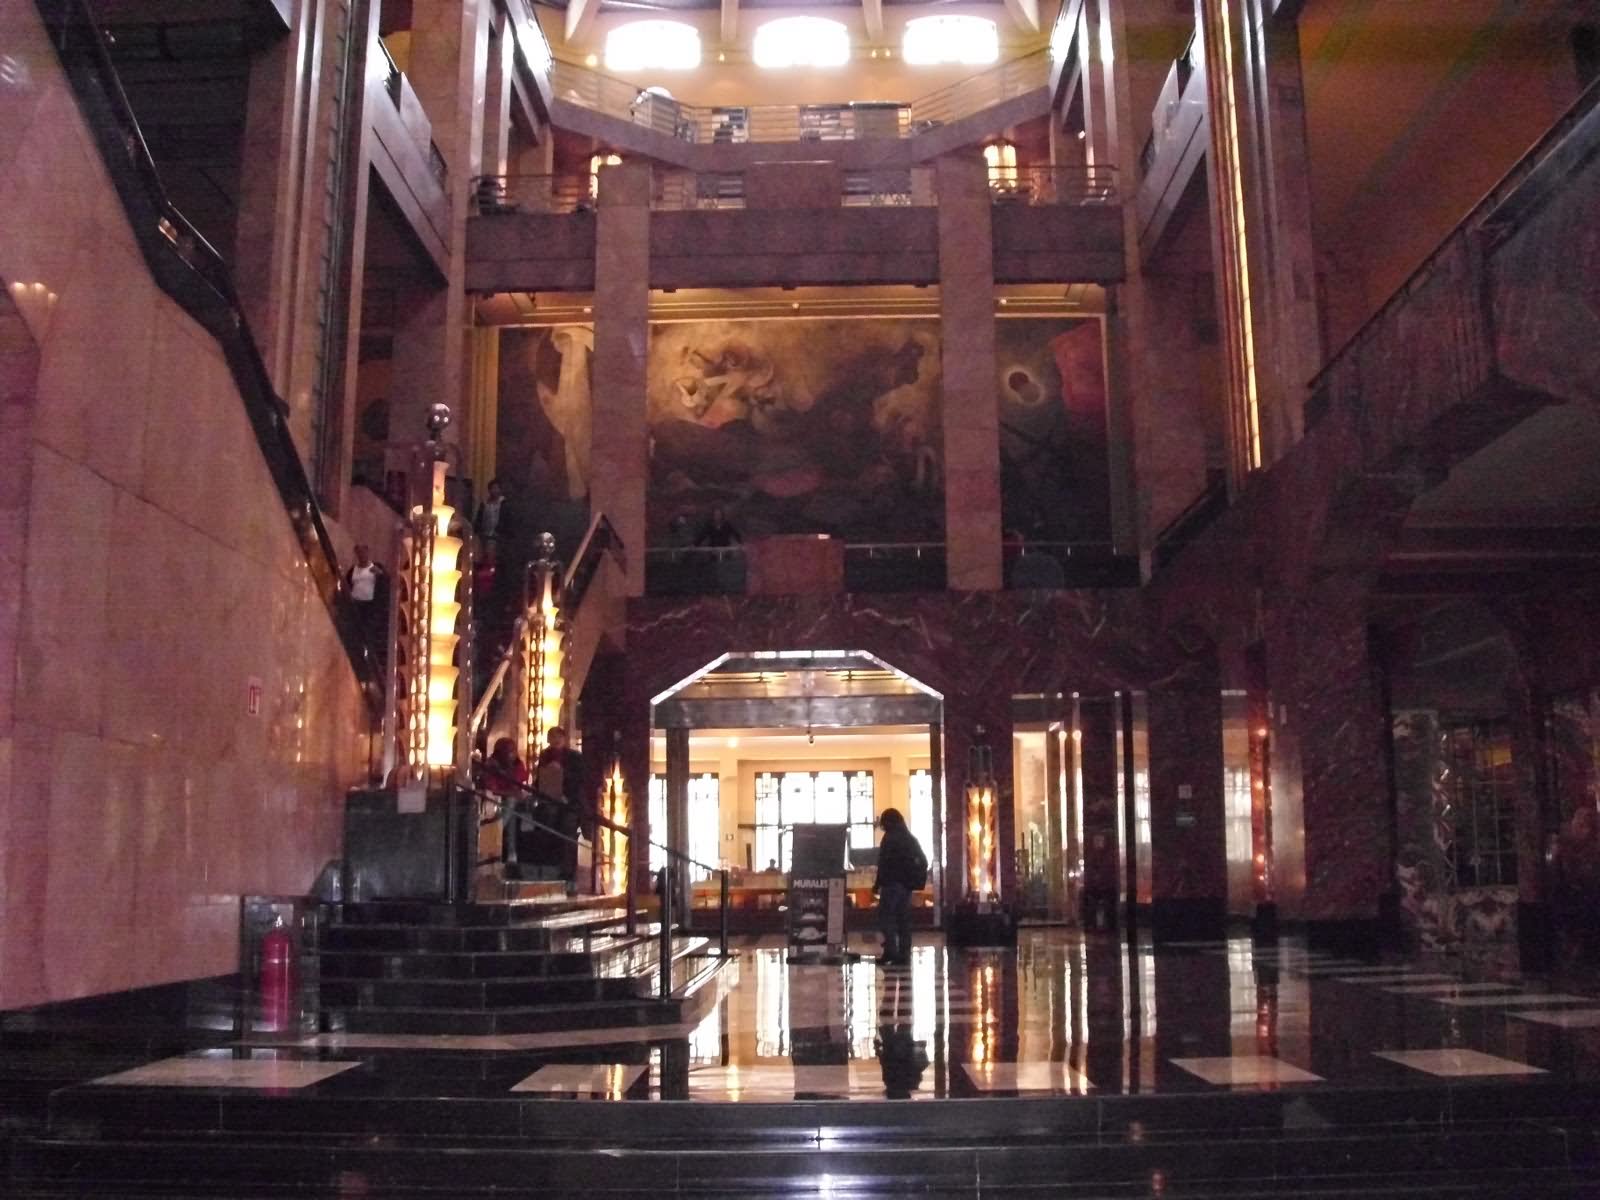 Interior Lobby Of The Palacio de Bellas Artes